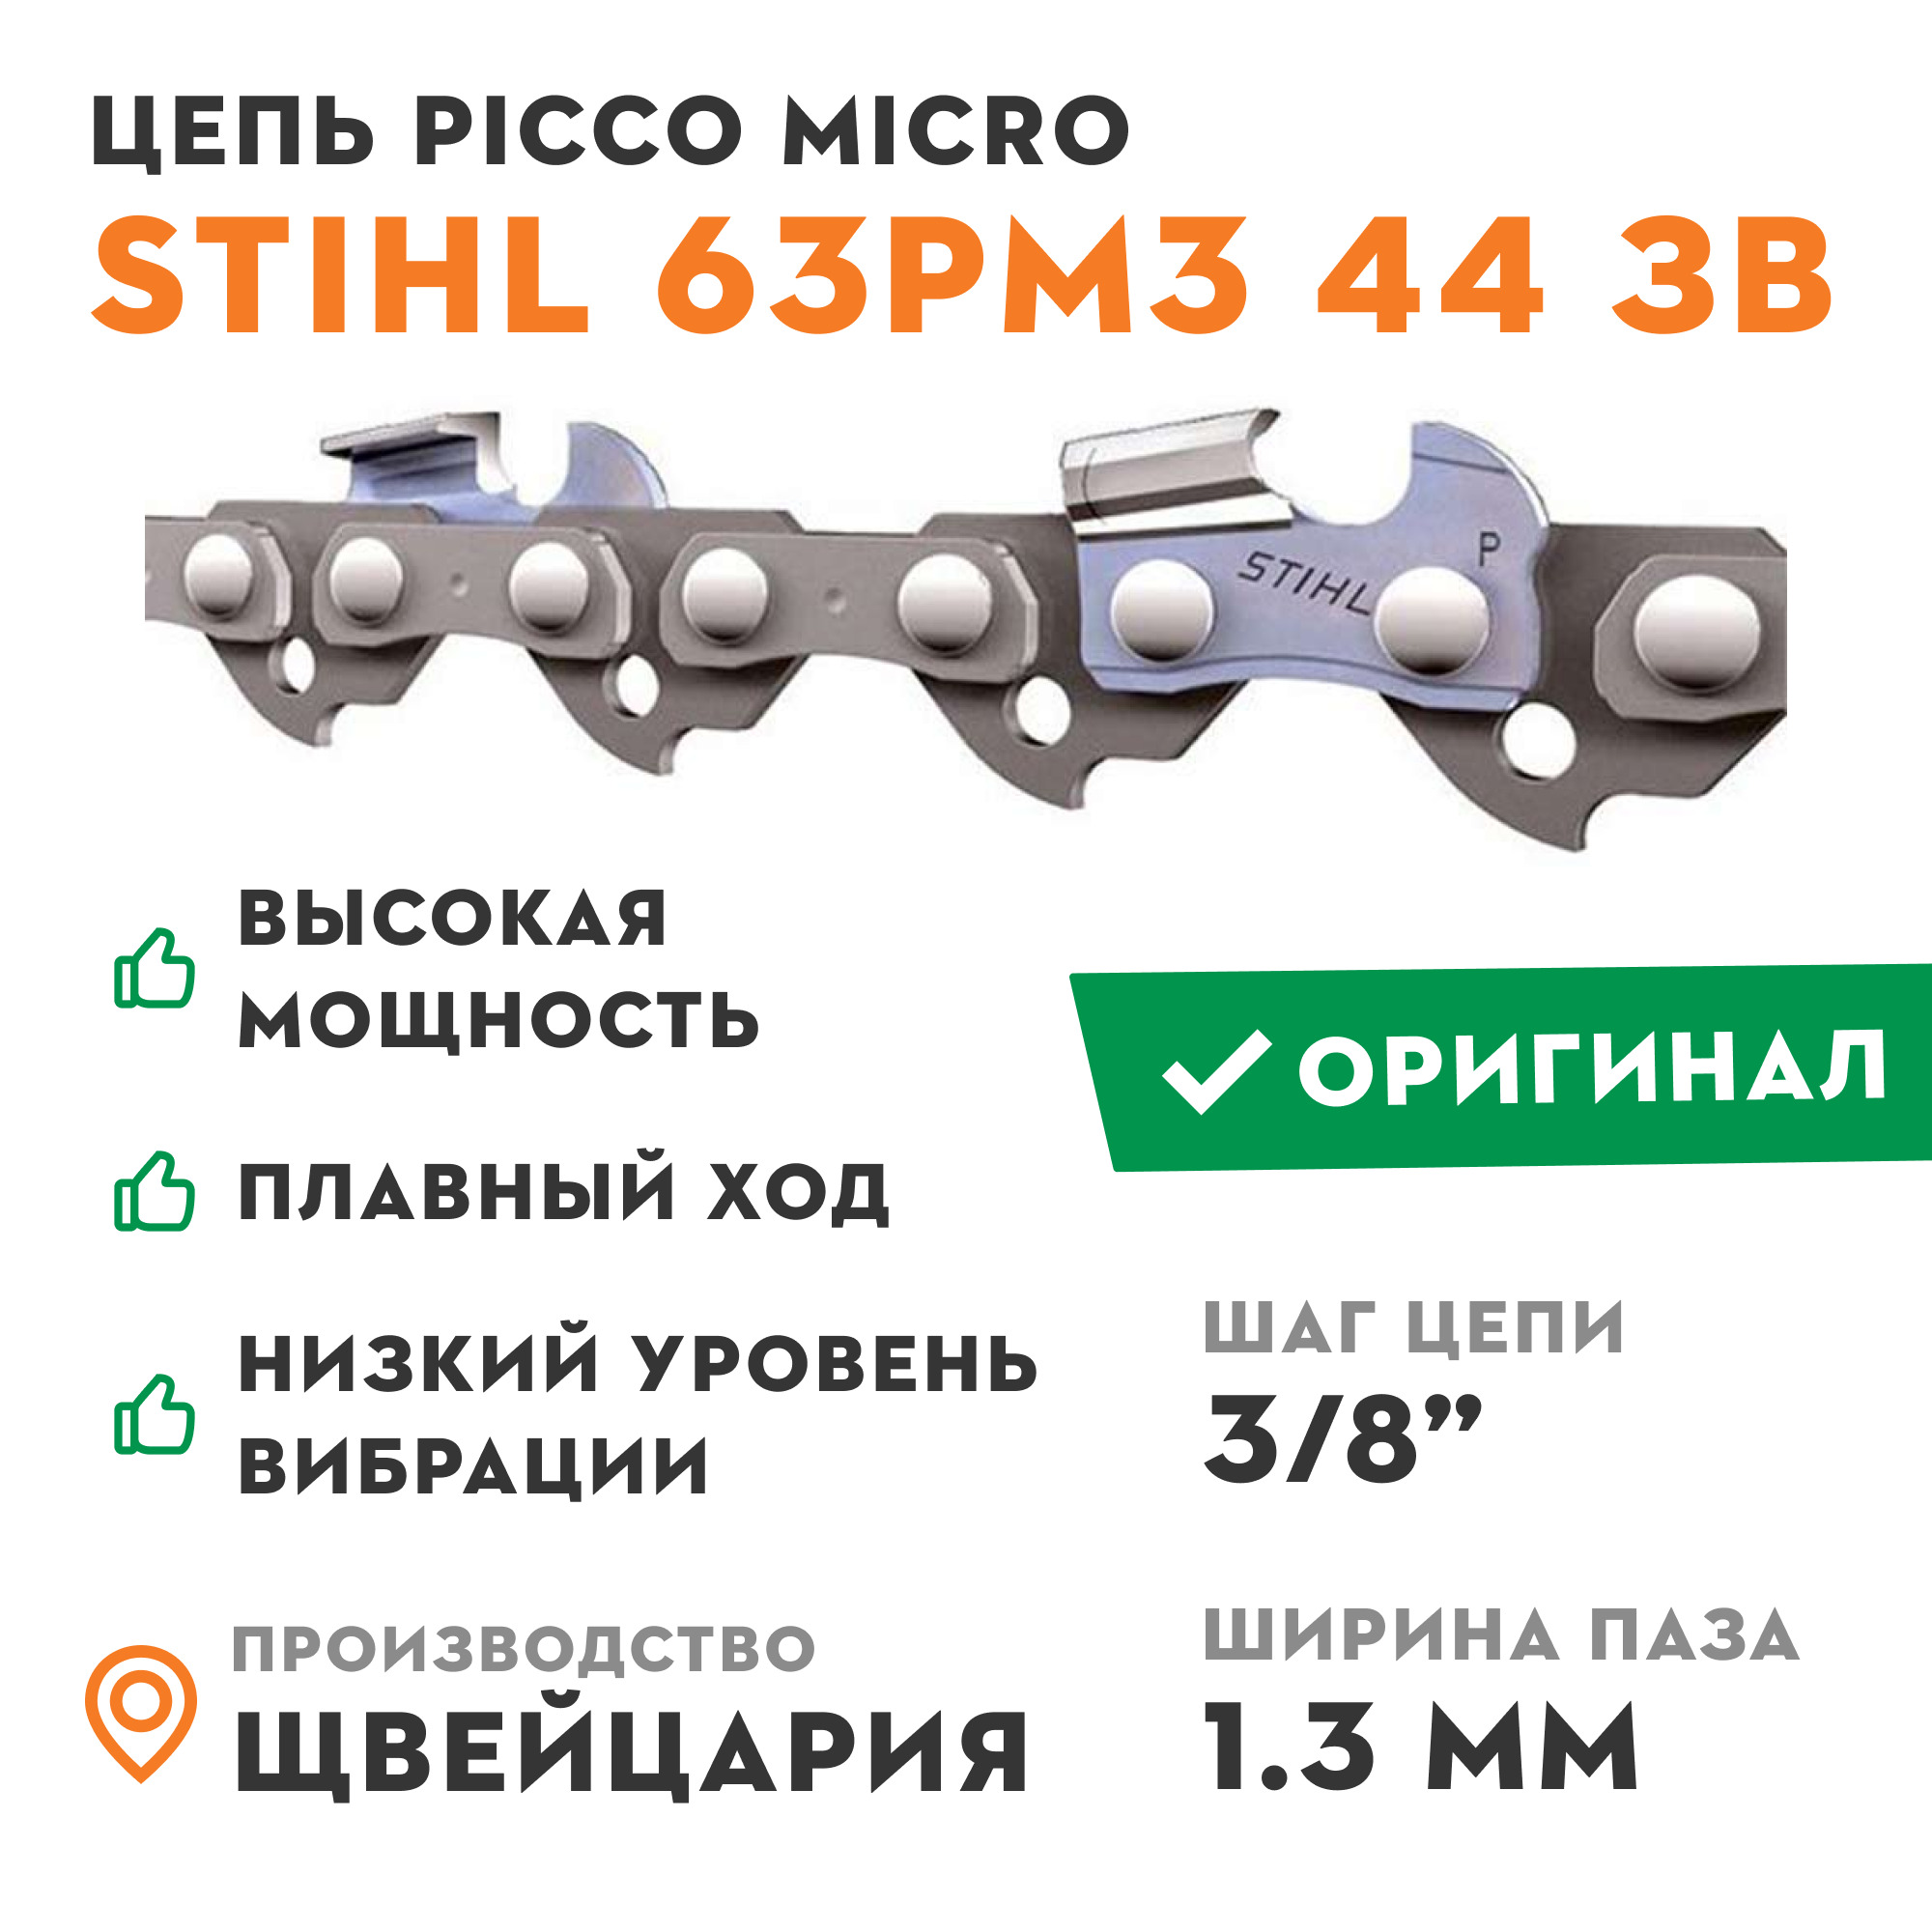 Цепь штиль озон. Цепь для бензопилы Stihl 63 PM Picco Micro, 1.3 мм, шаг 3/8"p, 55 звеньев. Цепь штиль 55 звеньев 3/8 шаг 1.3. Цепь 72 звена Stihl. Цепь для бензопилы Stihl 63pm 3/8" 1.3 мм 16" 55 зв..